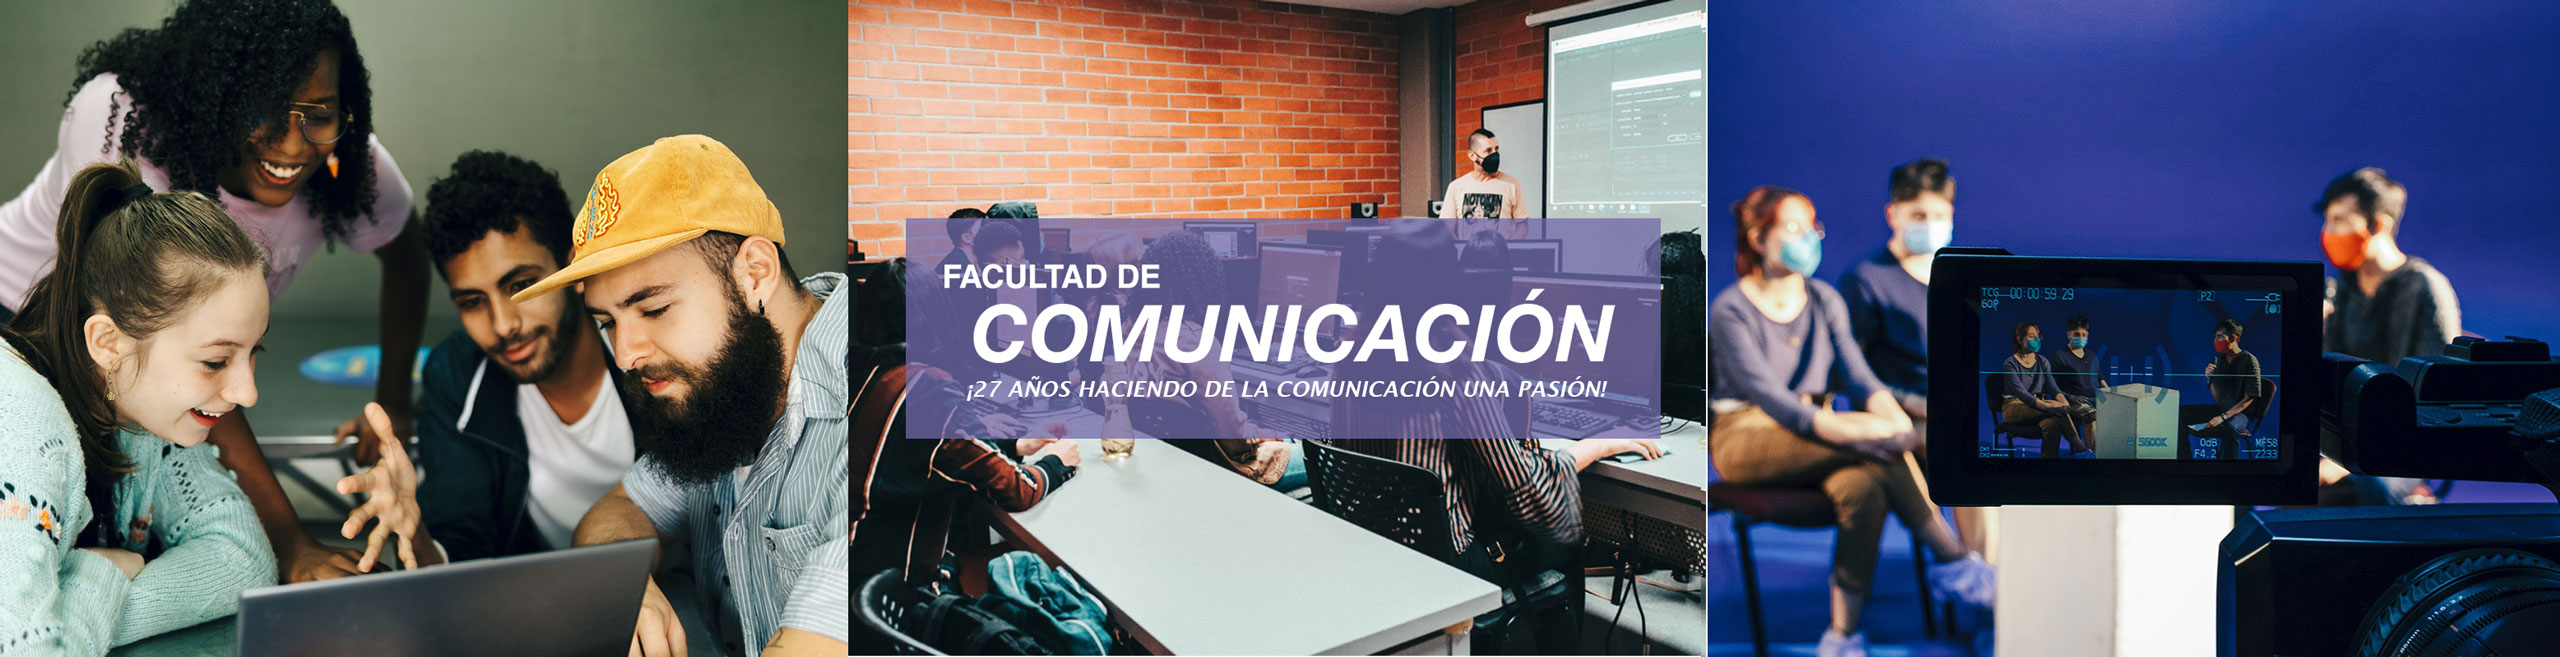 banner_fac_comunicacion